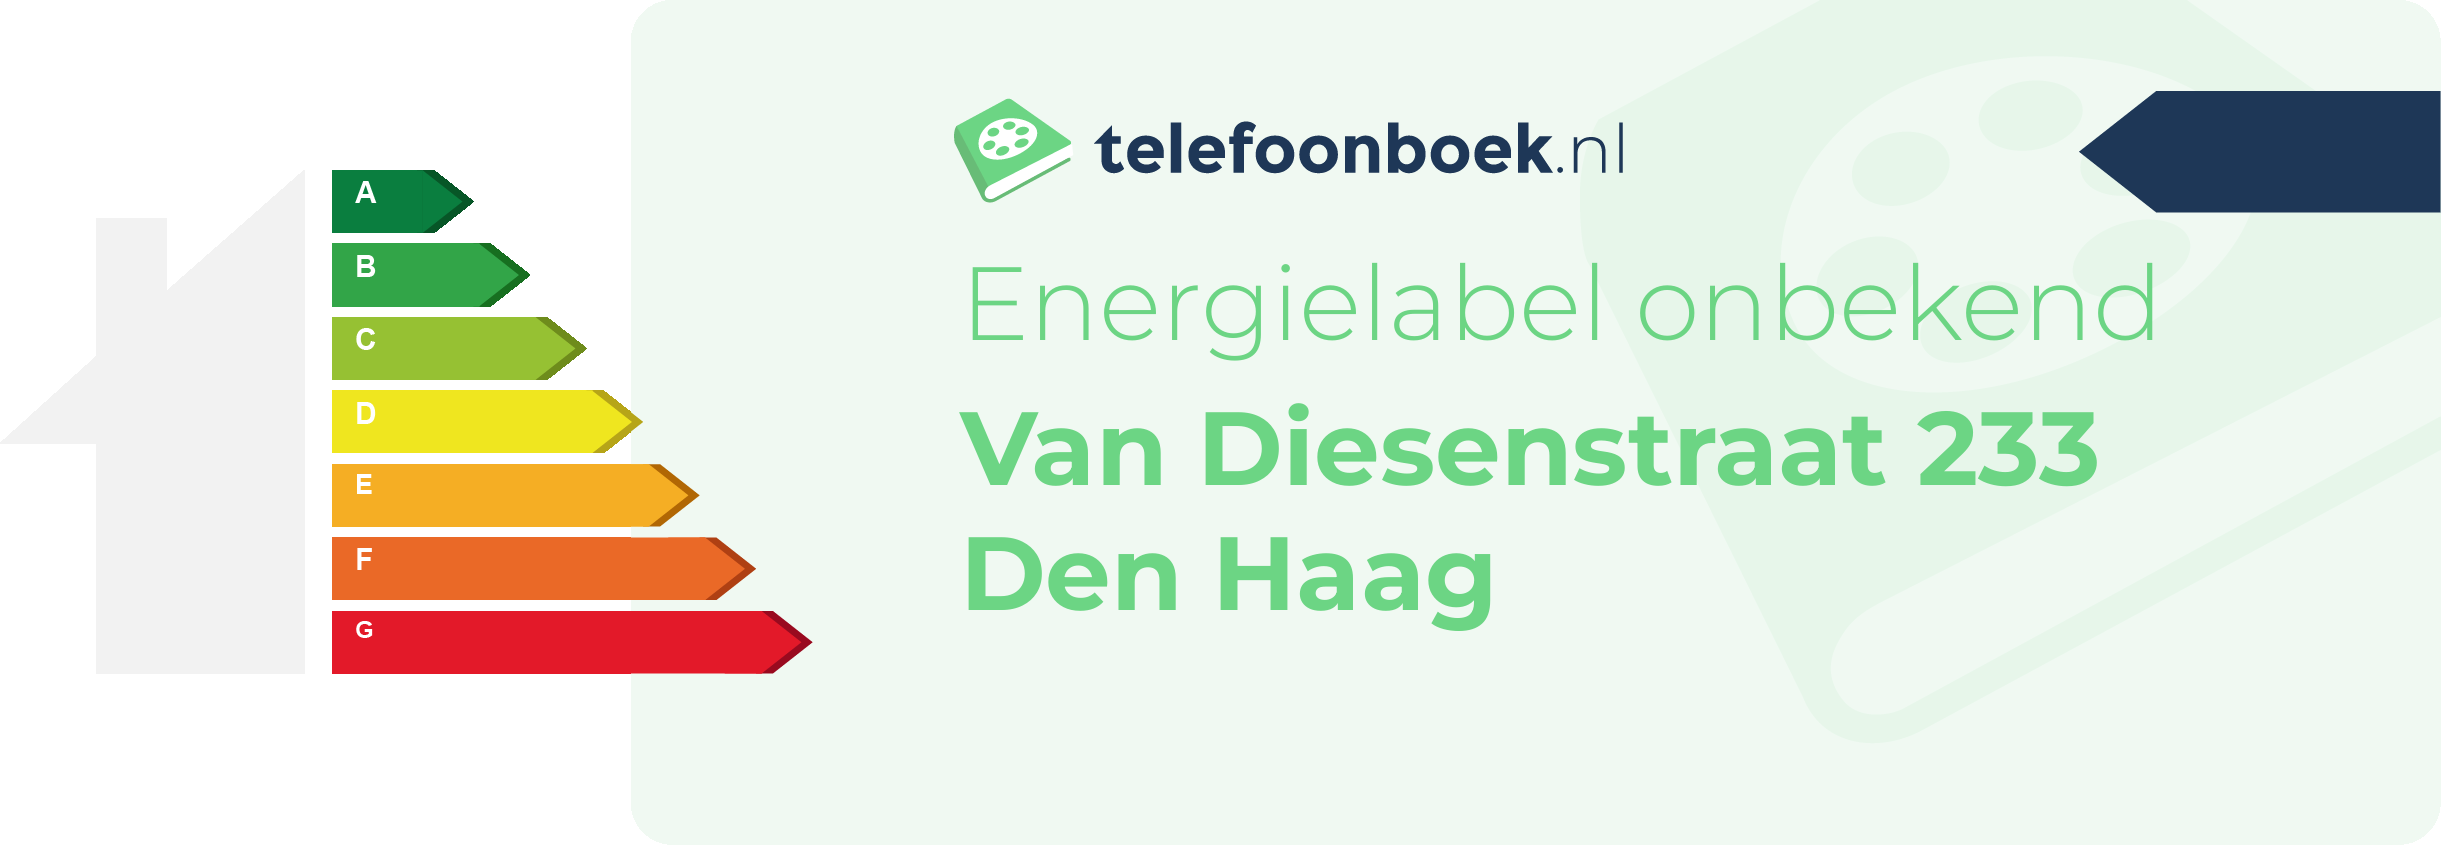 Energielabel Van Diesenstraat 233 Den Haag